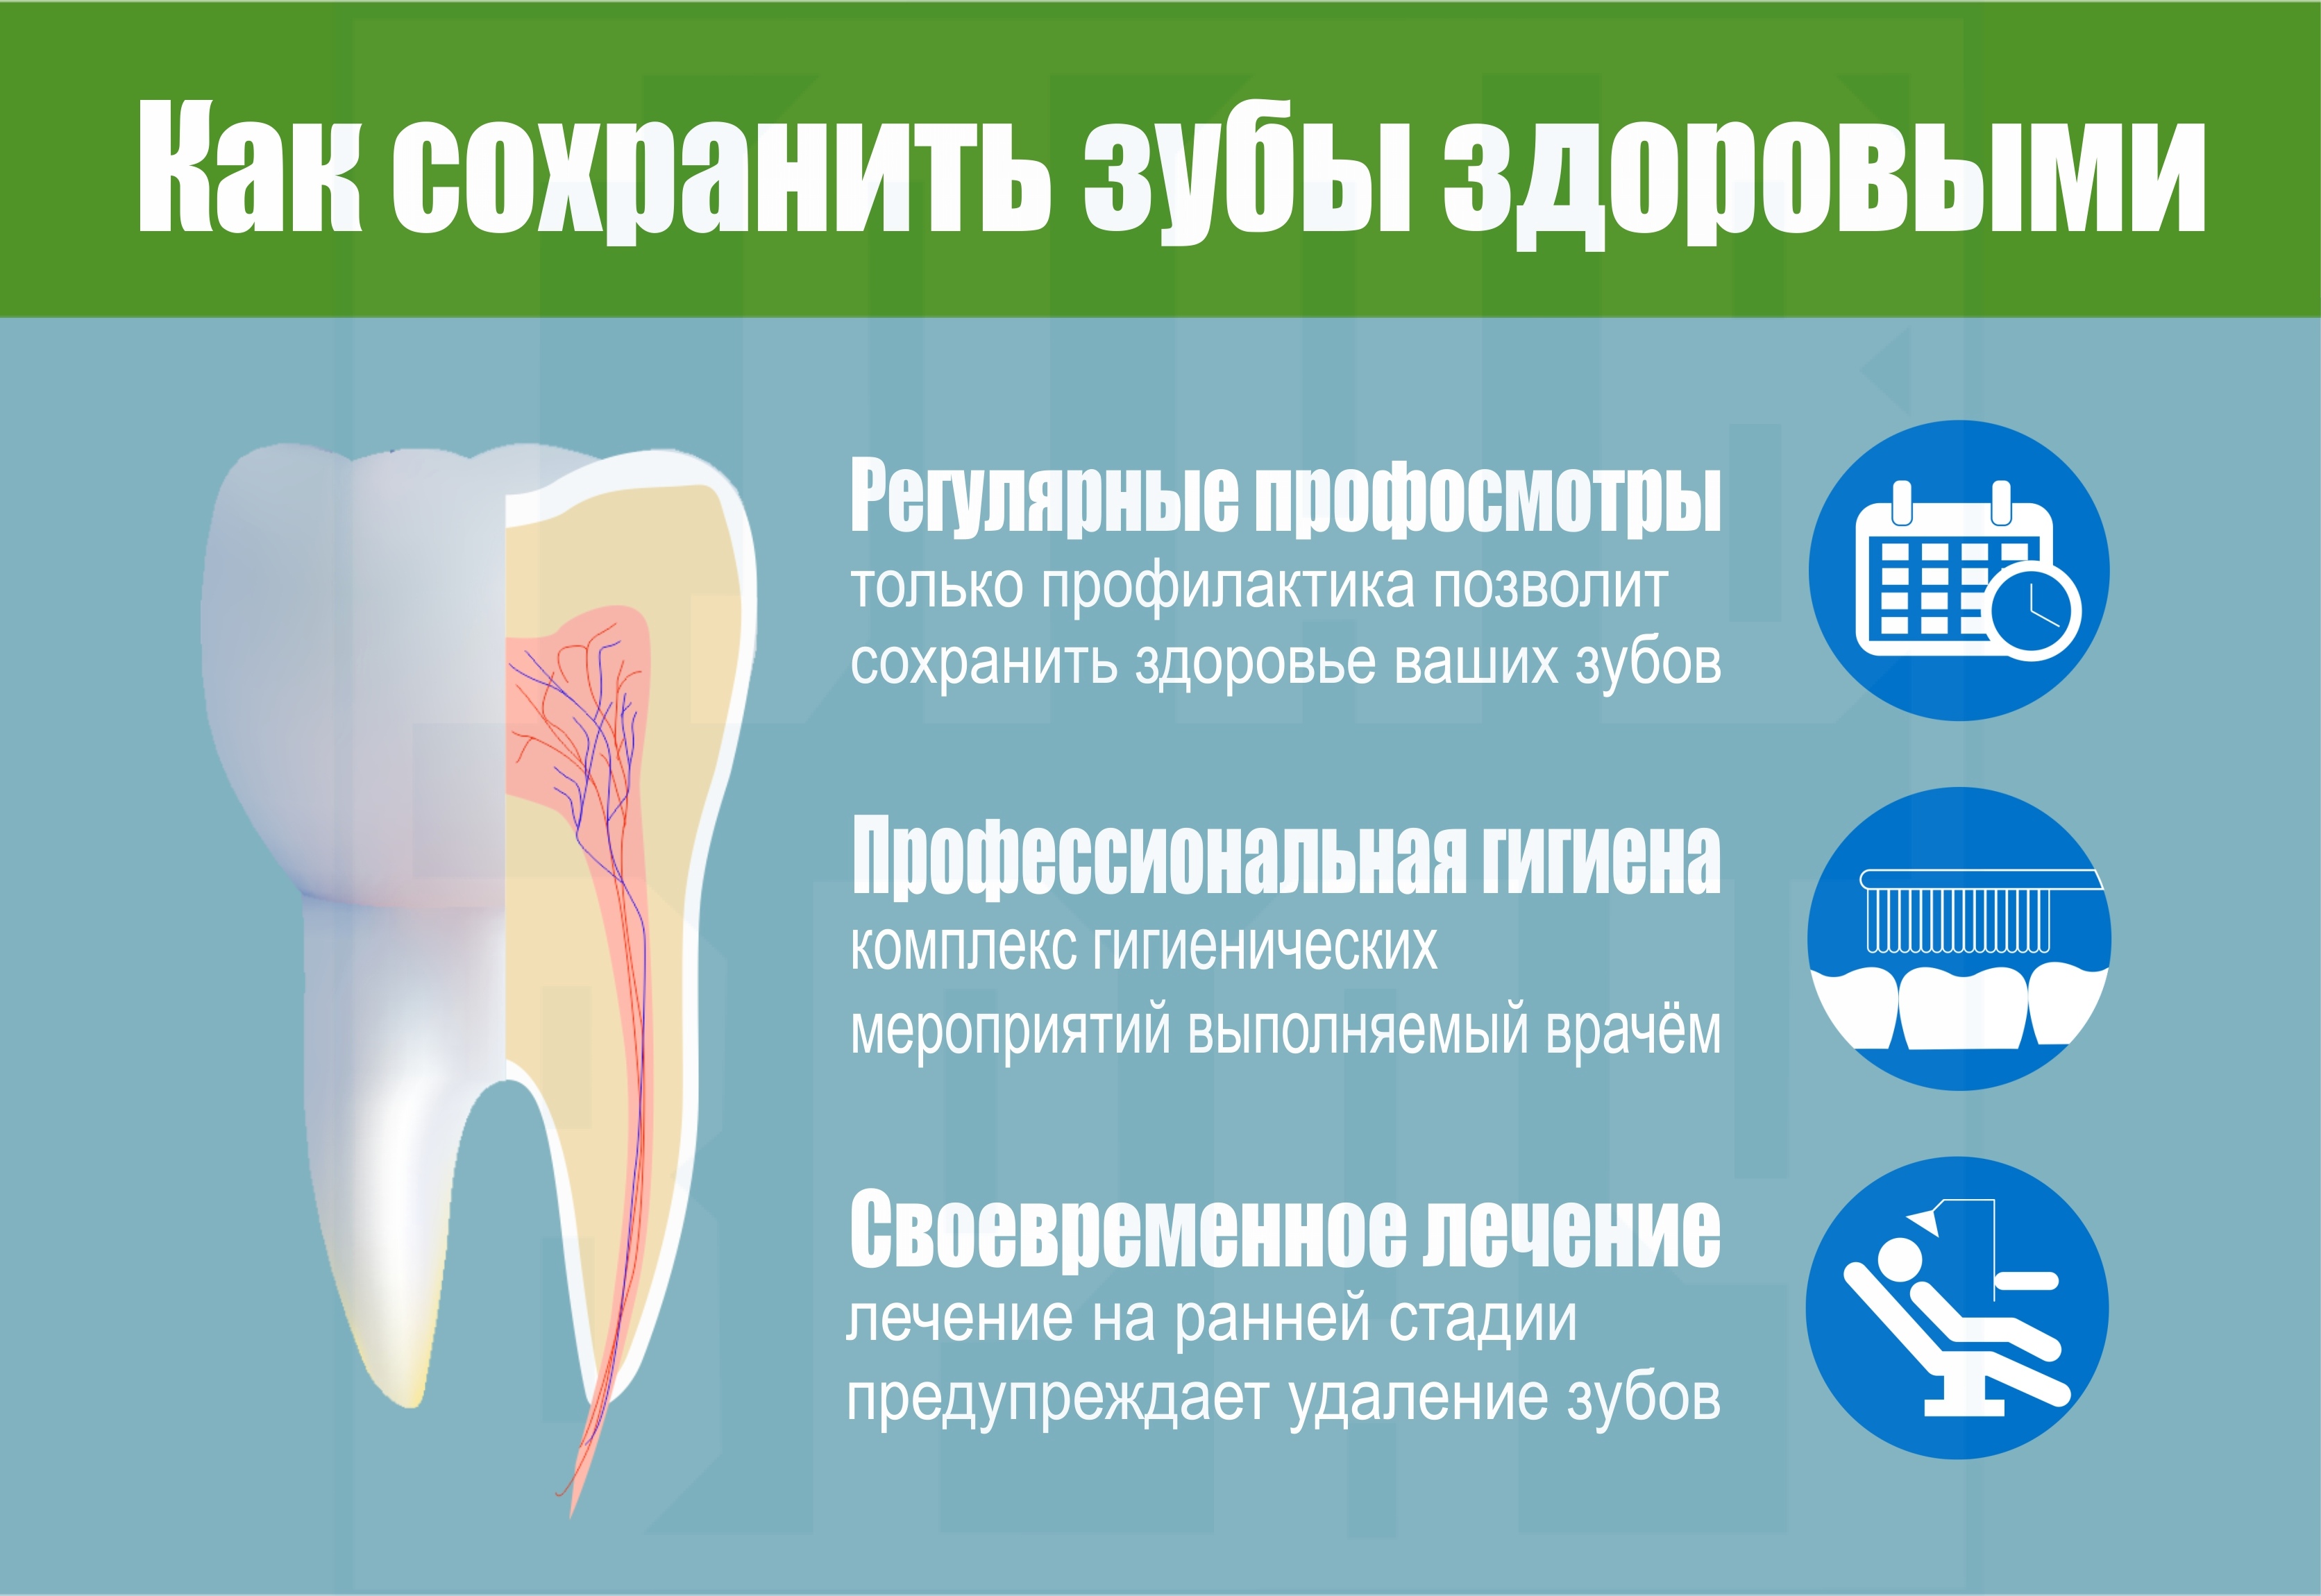 инфографика_как_сохранить_здоровье_зубов